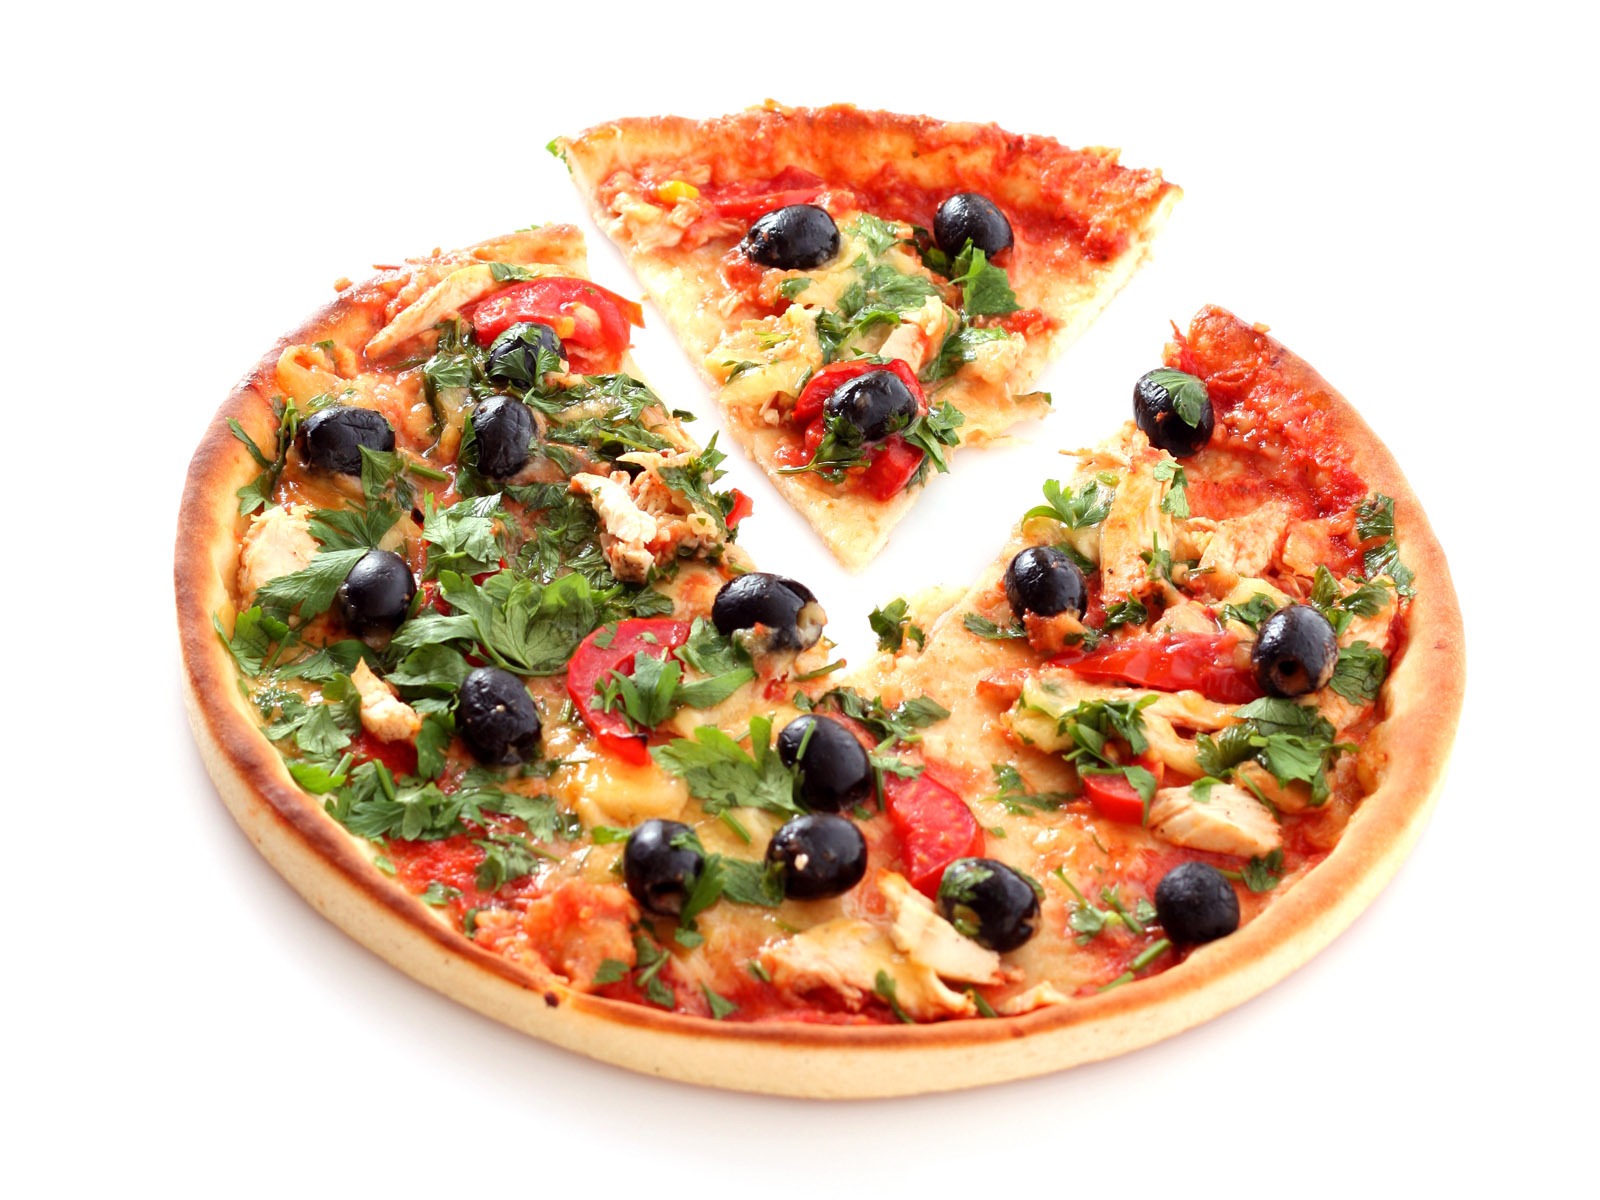 Fondos de pizzerías de Alimentos (4) #5 - 1600x1200